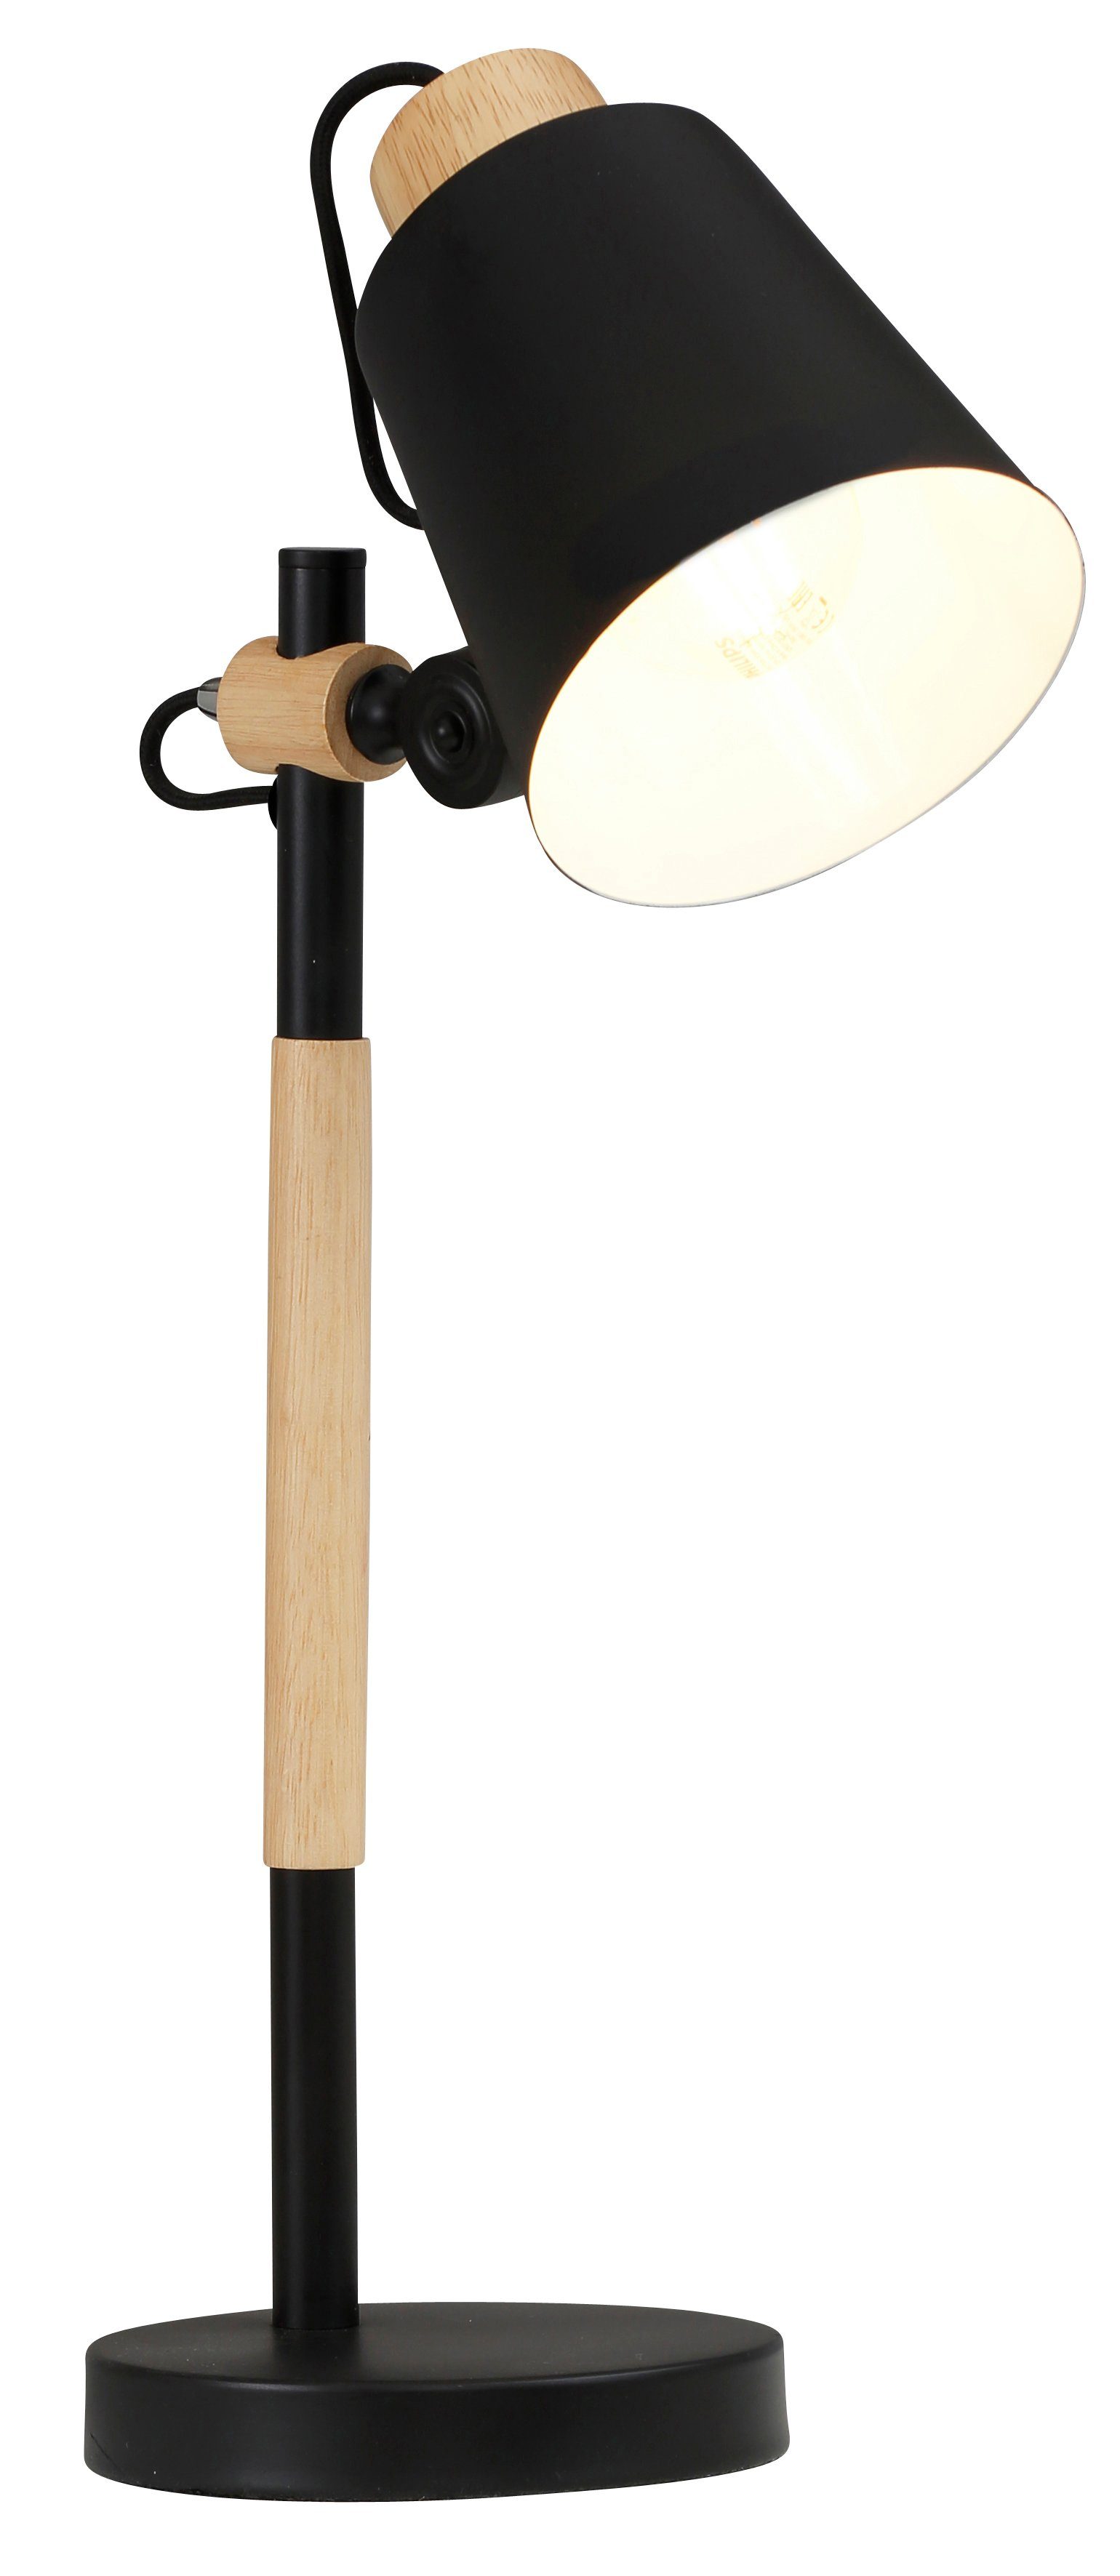 Tischlampe moderne Tischleuchte ohne Schirm Metall Design mit Holzfuß Desk Lamp 